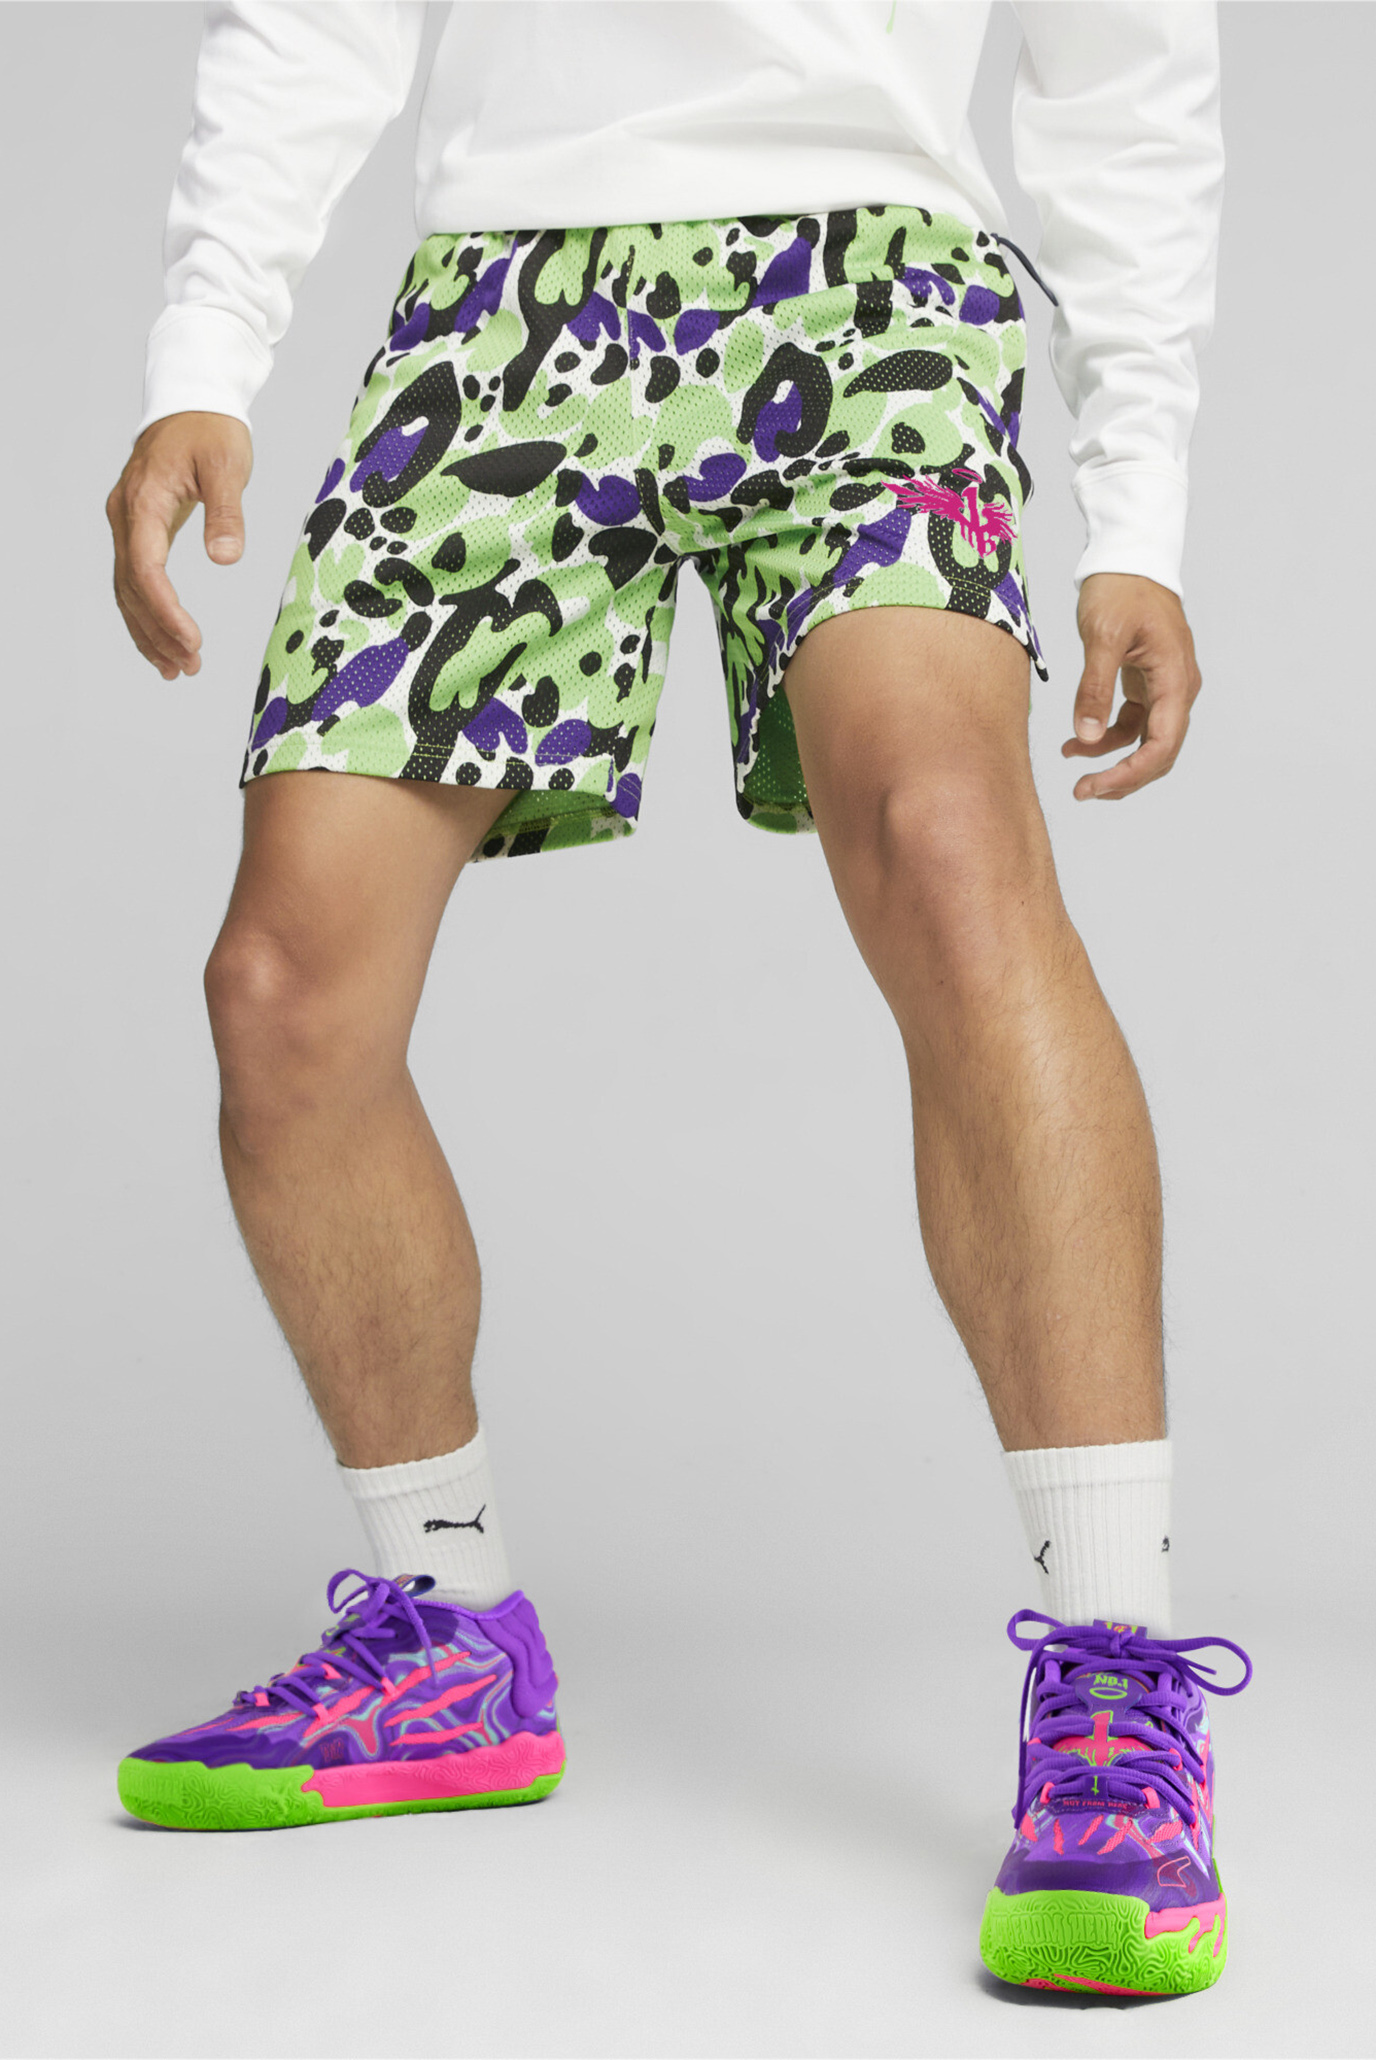 Мужские шорты с узоором MELO x TOXIC Men’s Basketball Shorts 1